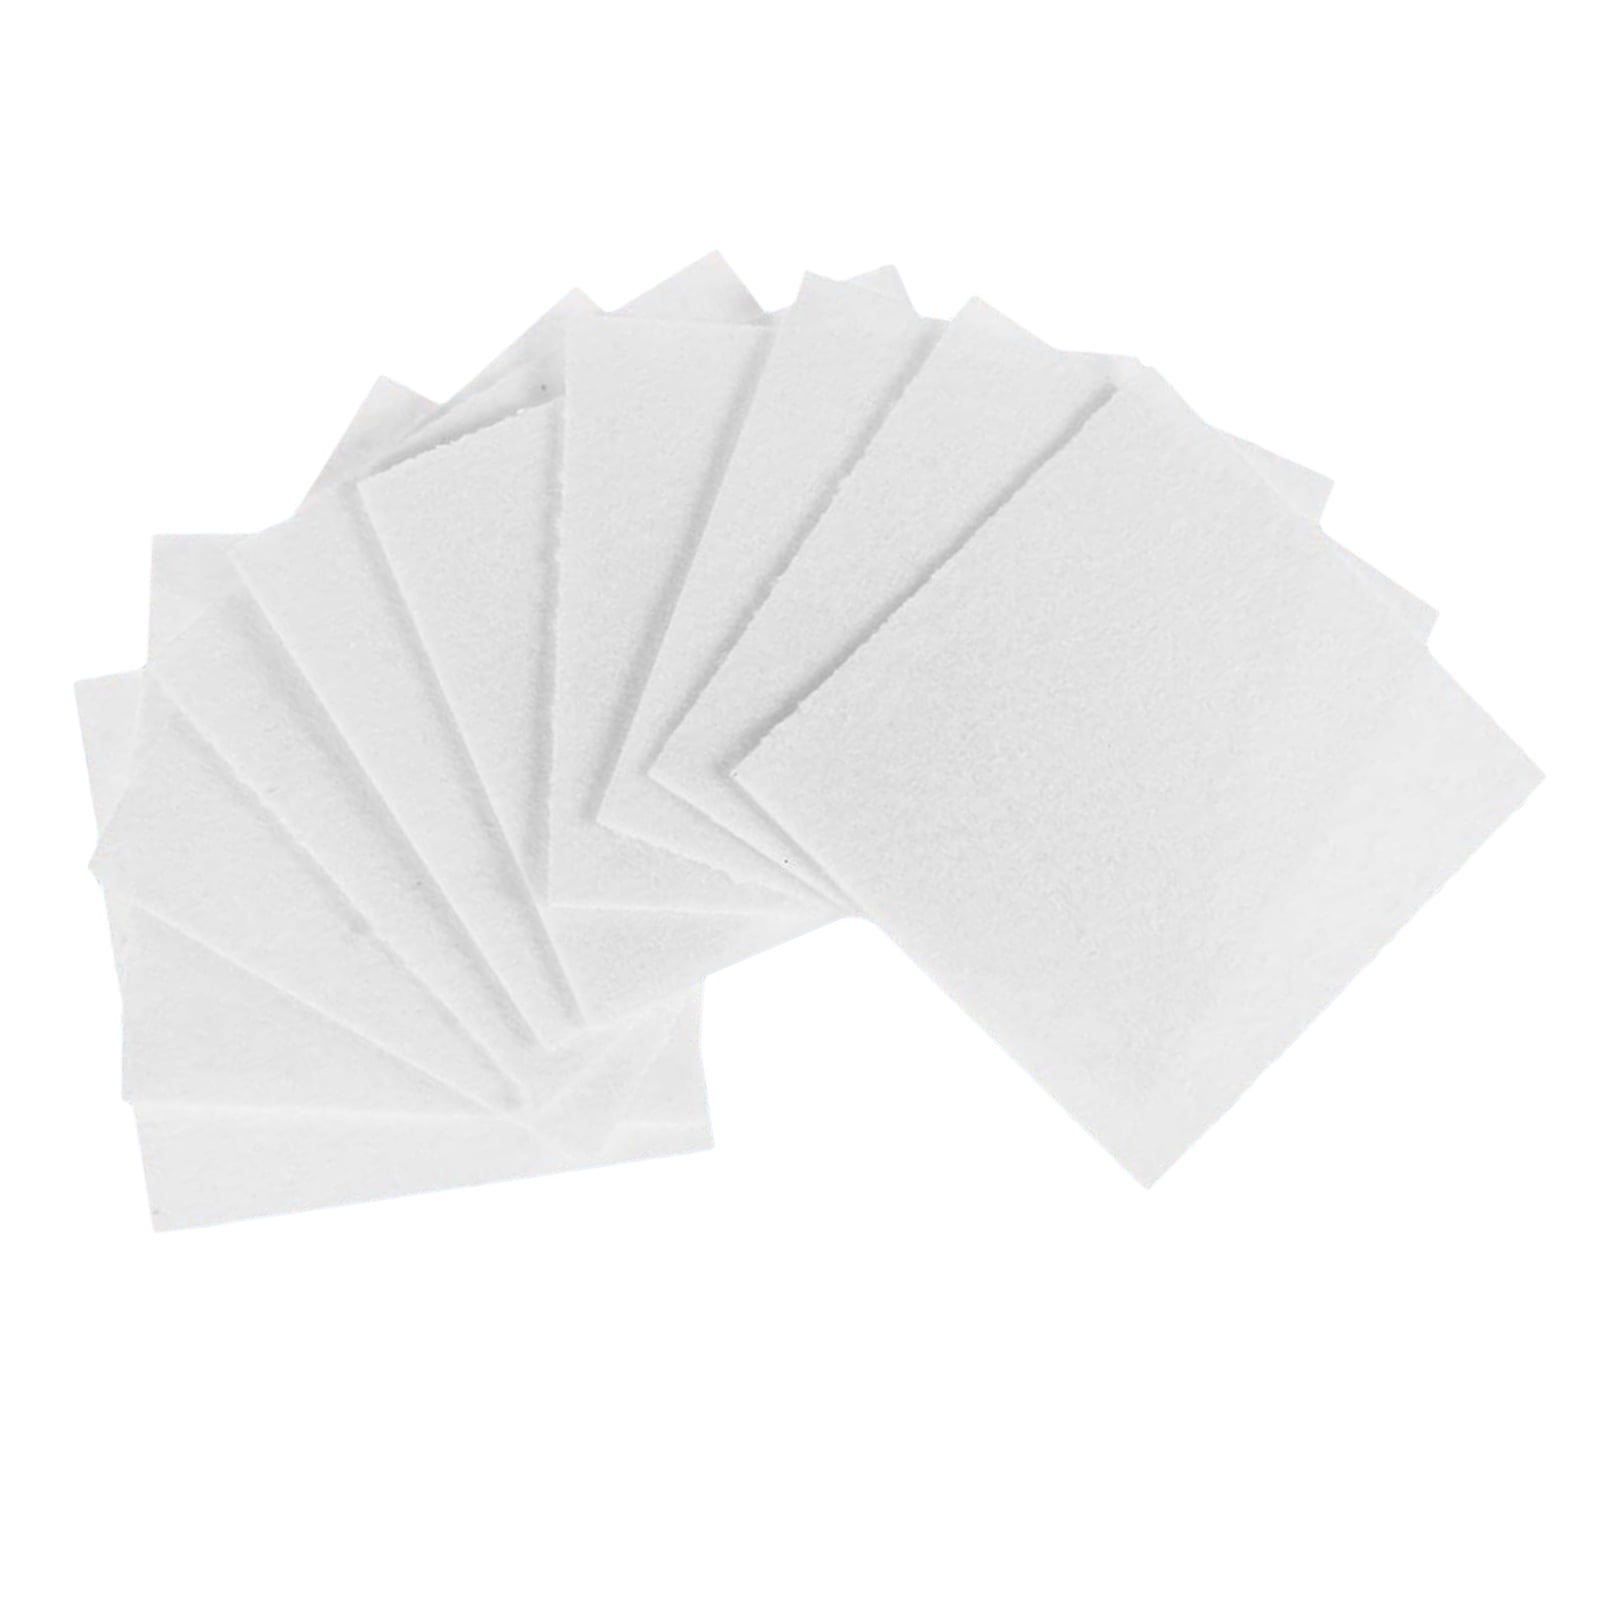 Glass Fusing Paper Sheets 50 Pcs Square Microwave Ceramic Fiber Household Kiln 